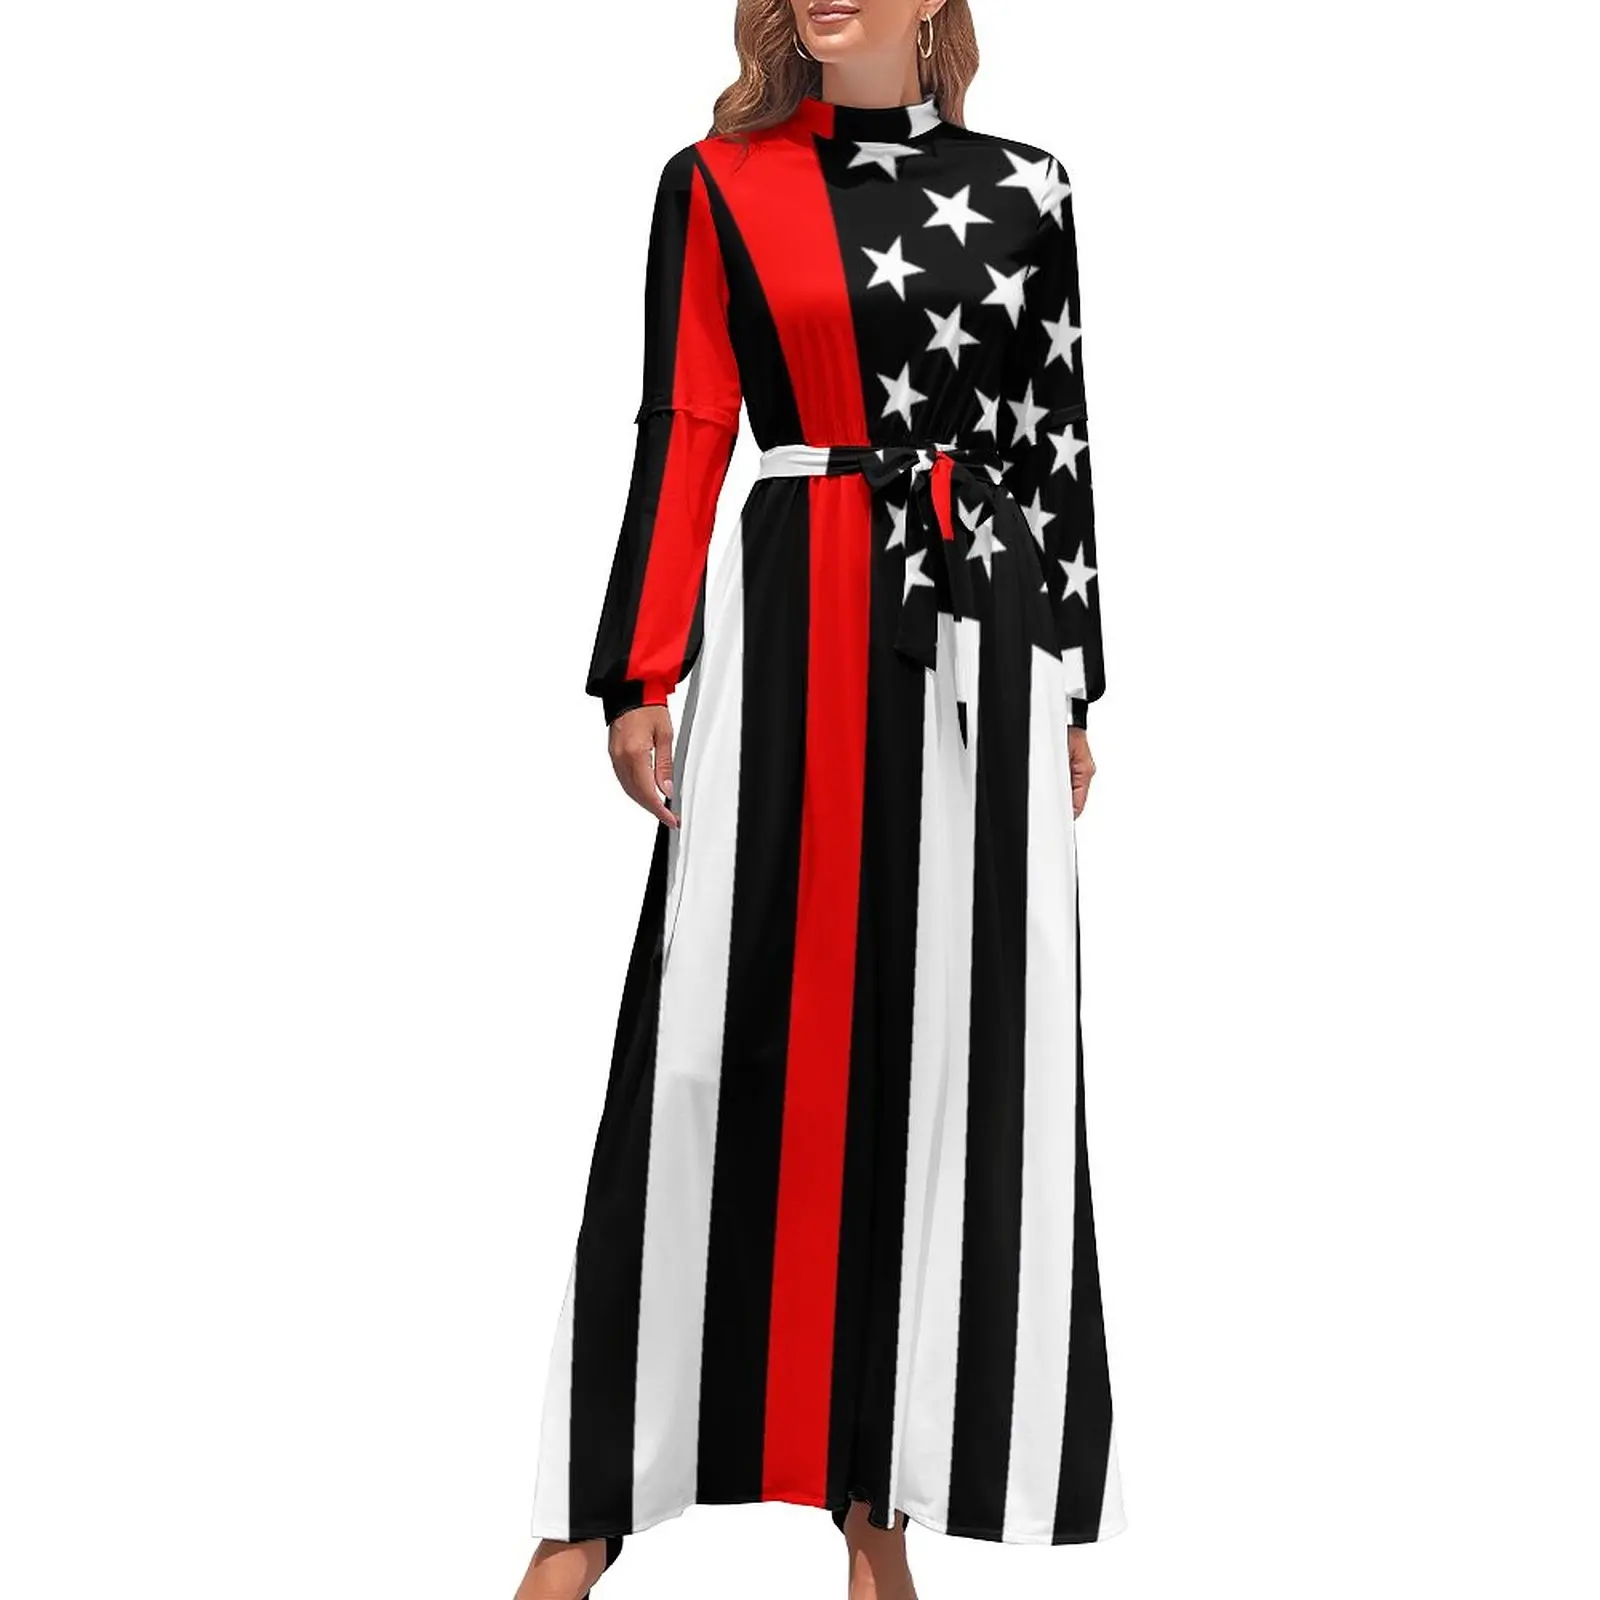 

Графическое платье с американским флагом, тонкое красное платье-макси с принтом звезд, индивидуальное Макси-платье с высоким воротником и длинным рукавом, модные богемные длинные платья